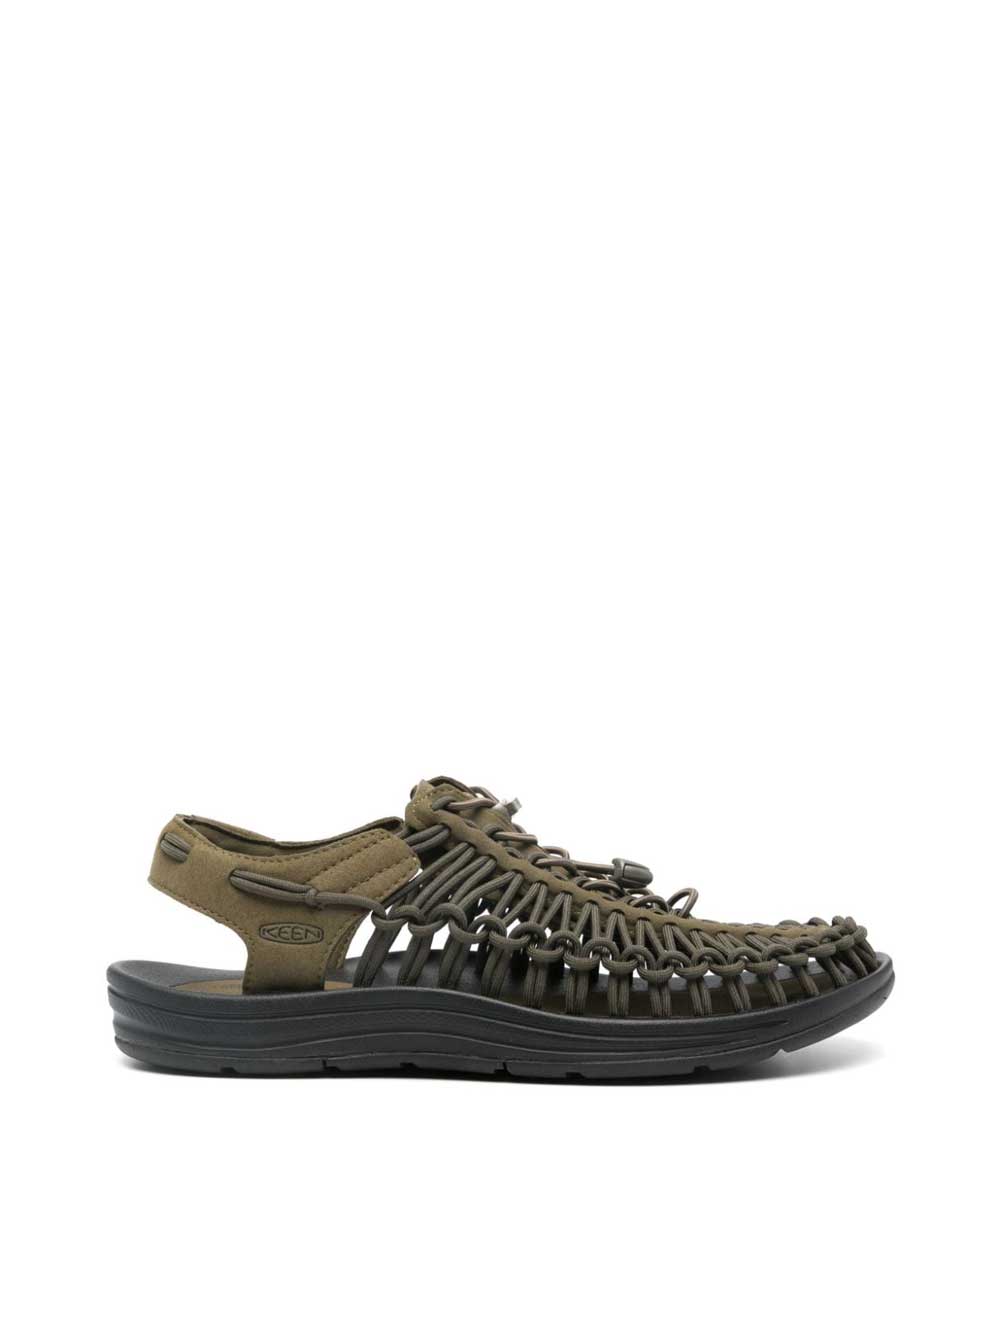 Olive Uneek Sandals